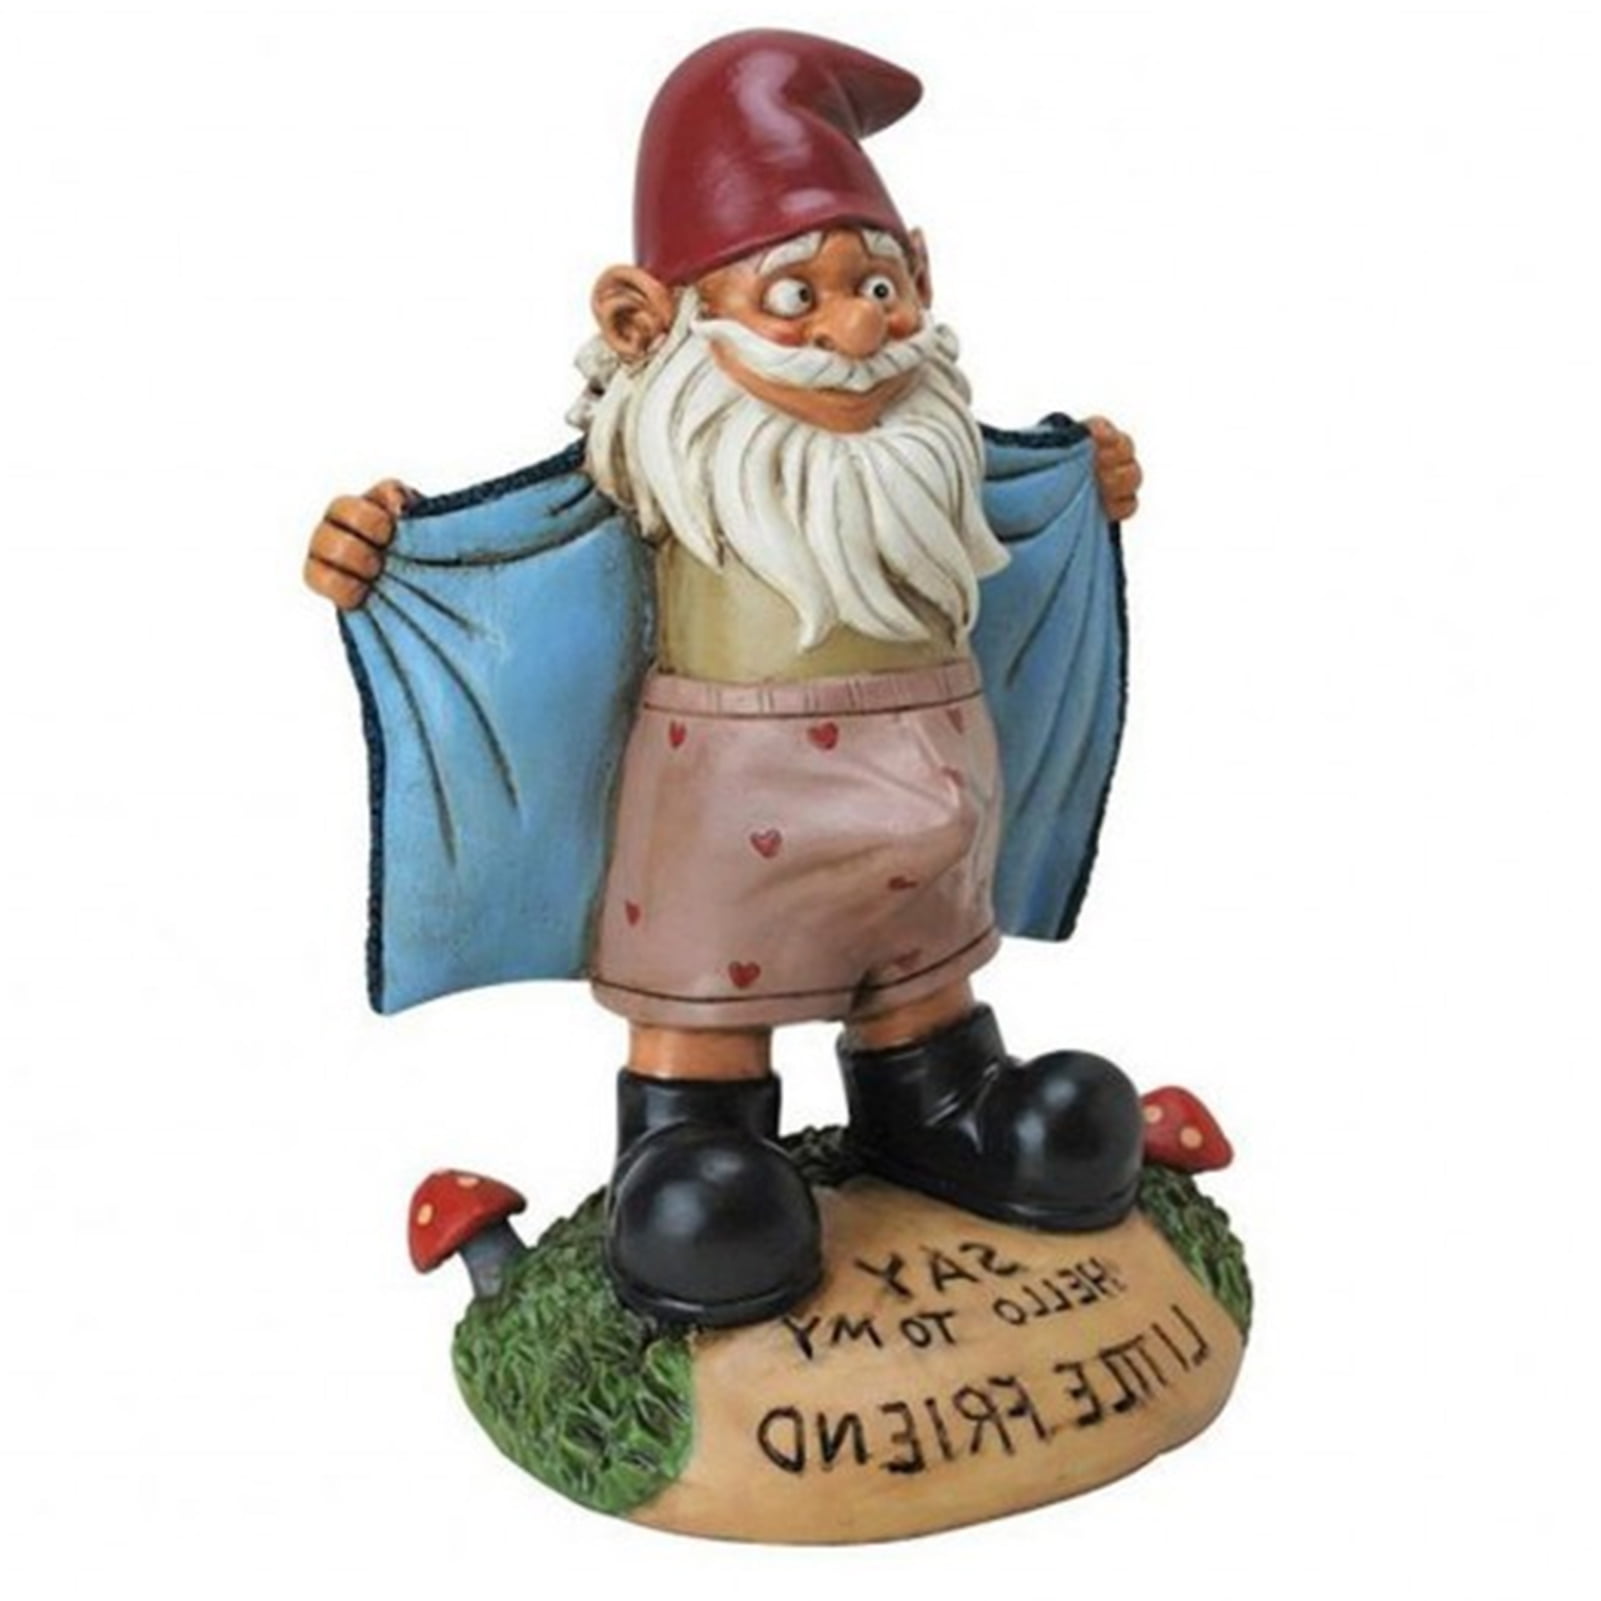 Yard Gnome Sculpture Dwarf Statue Plumber Figurine Large Garden Leprechaun Lawn 